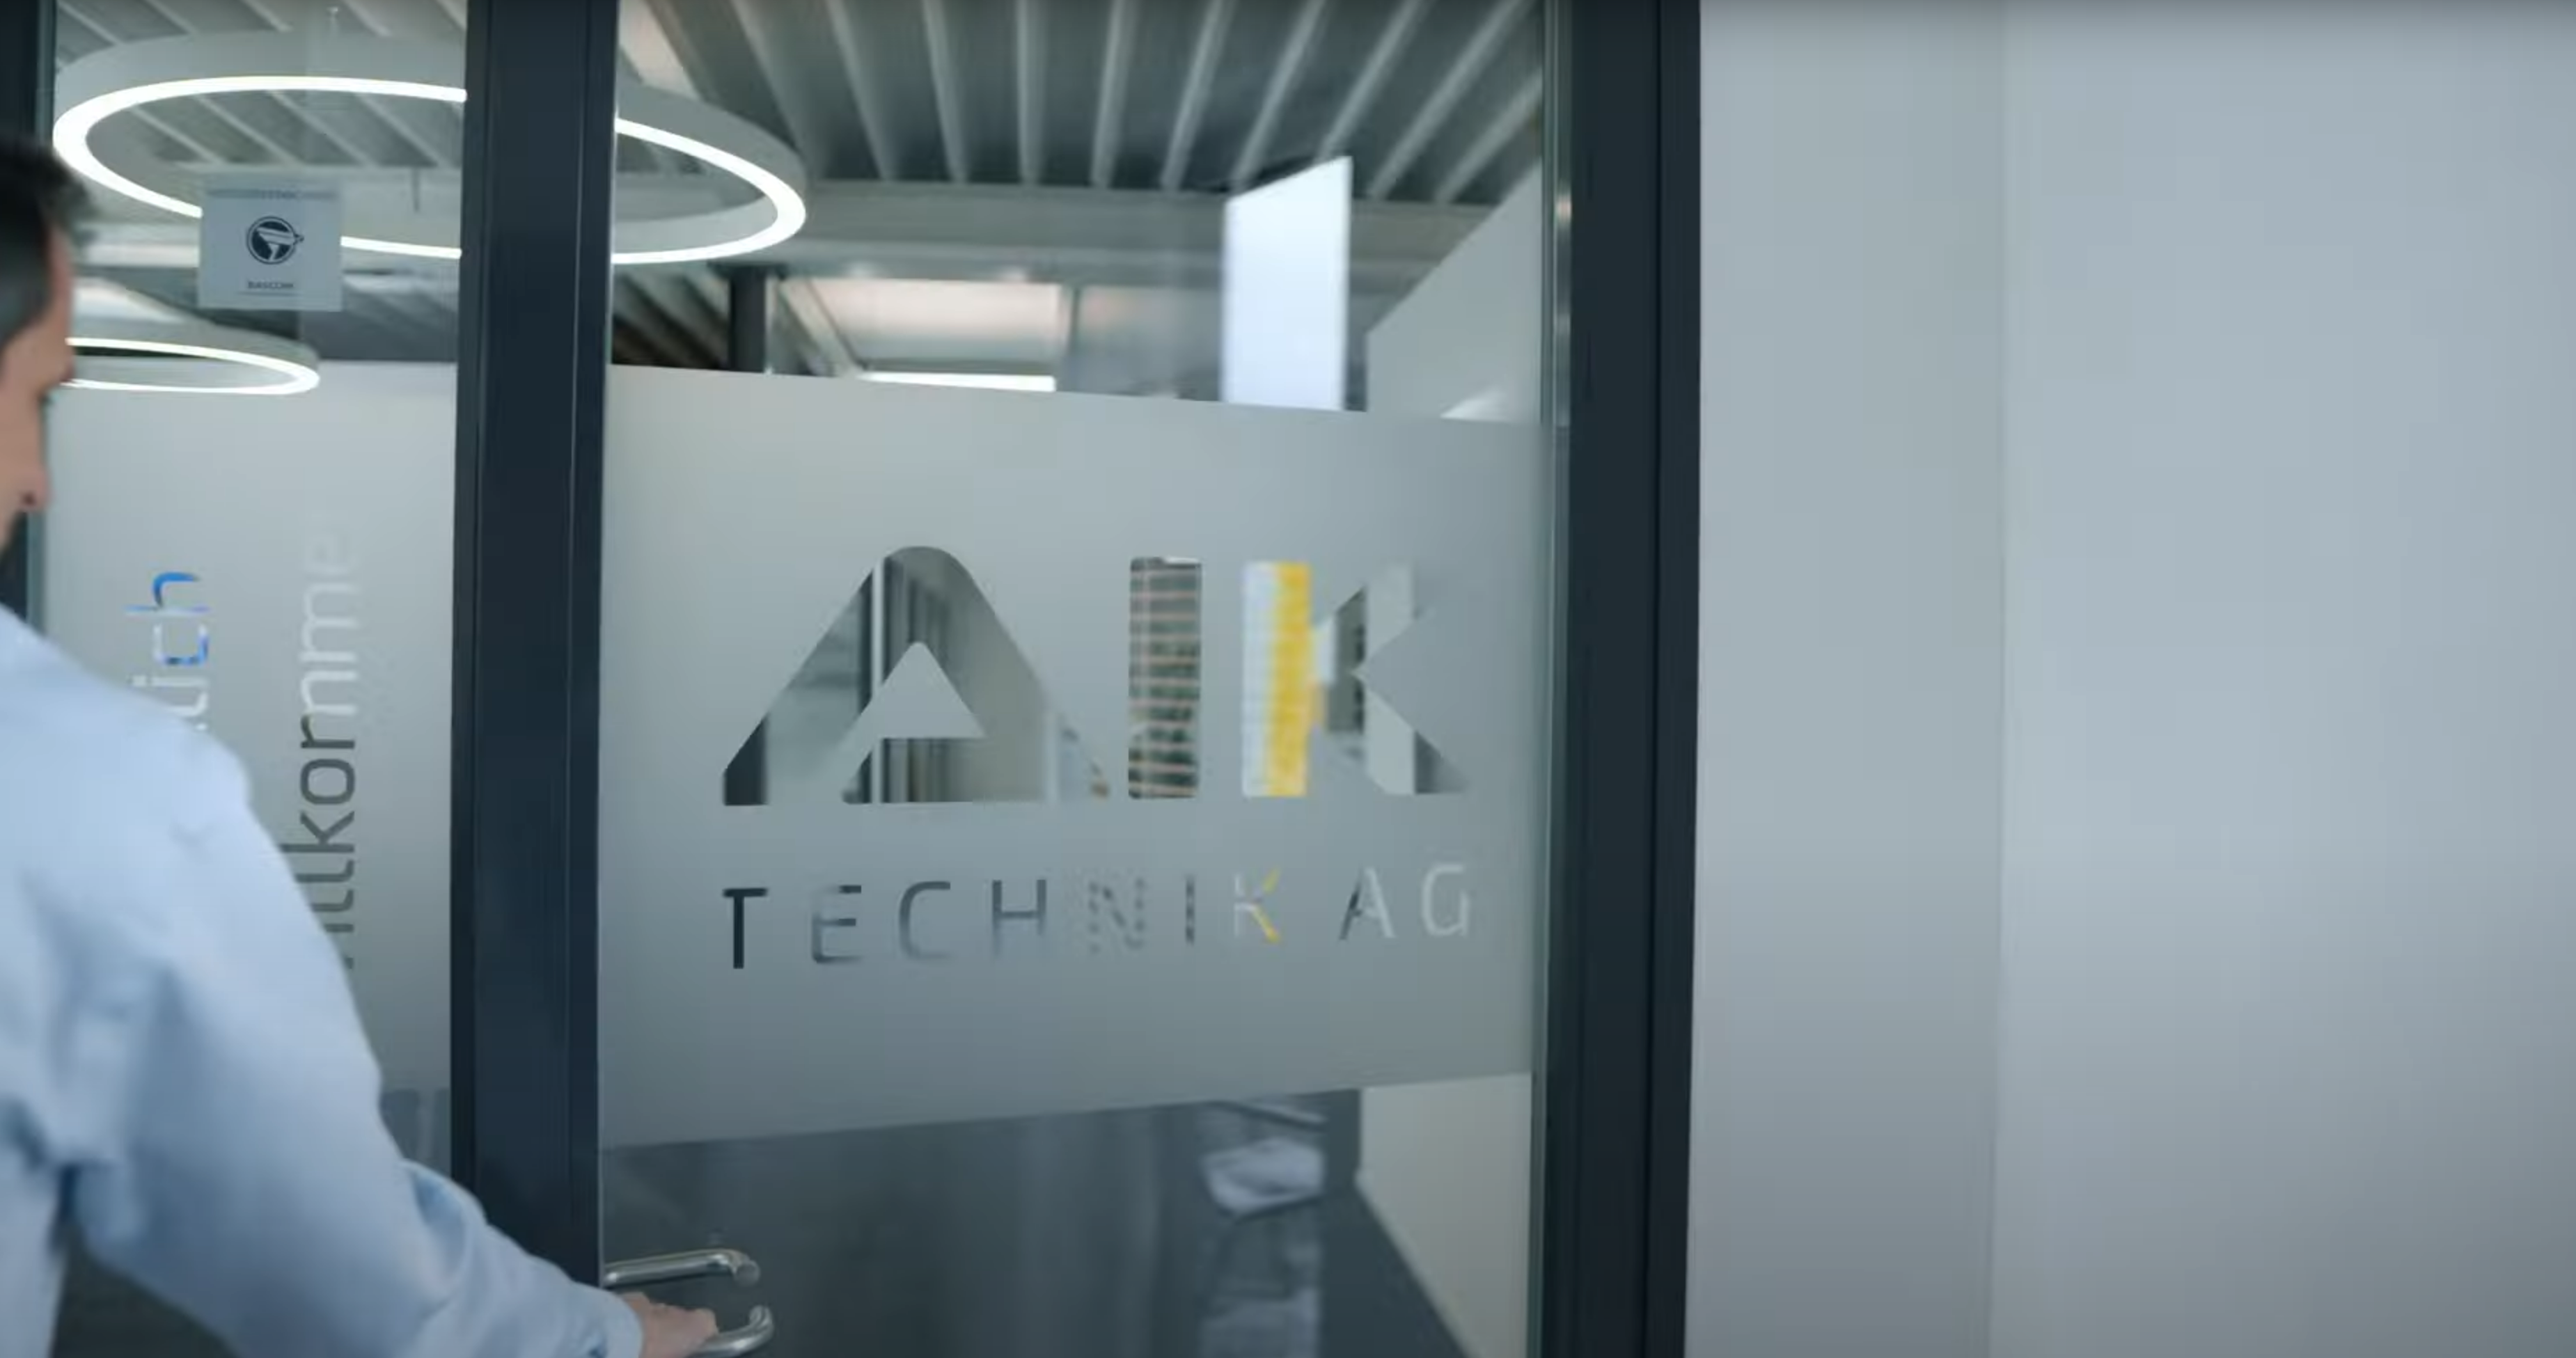 Vorstellungsvideo der AK Technik AG